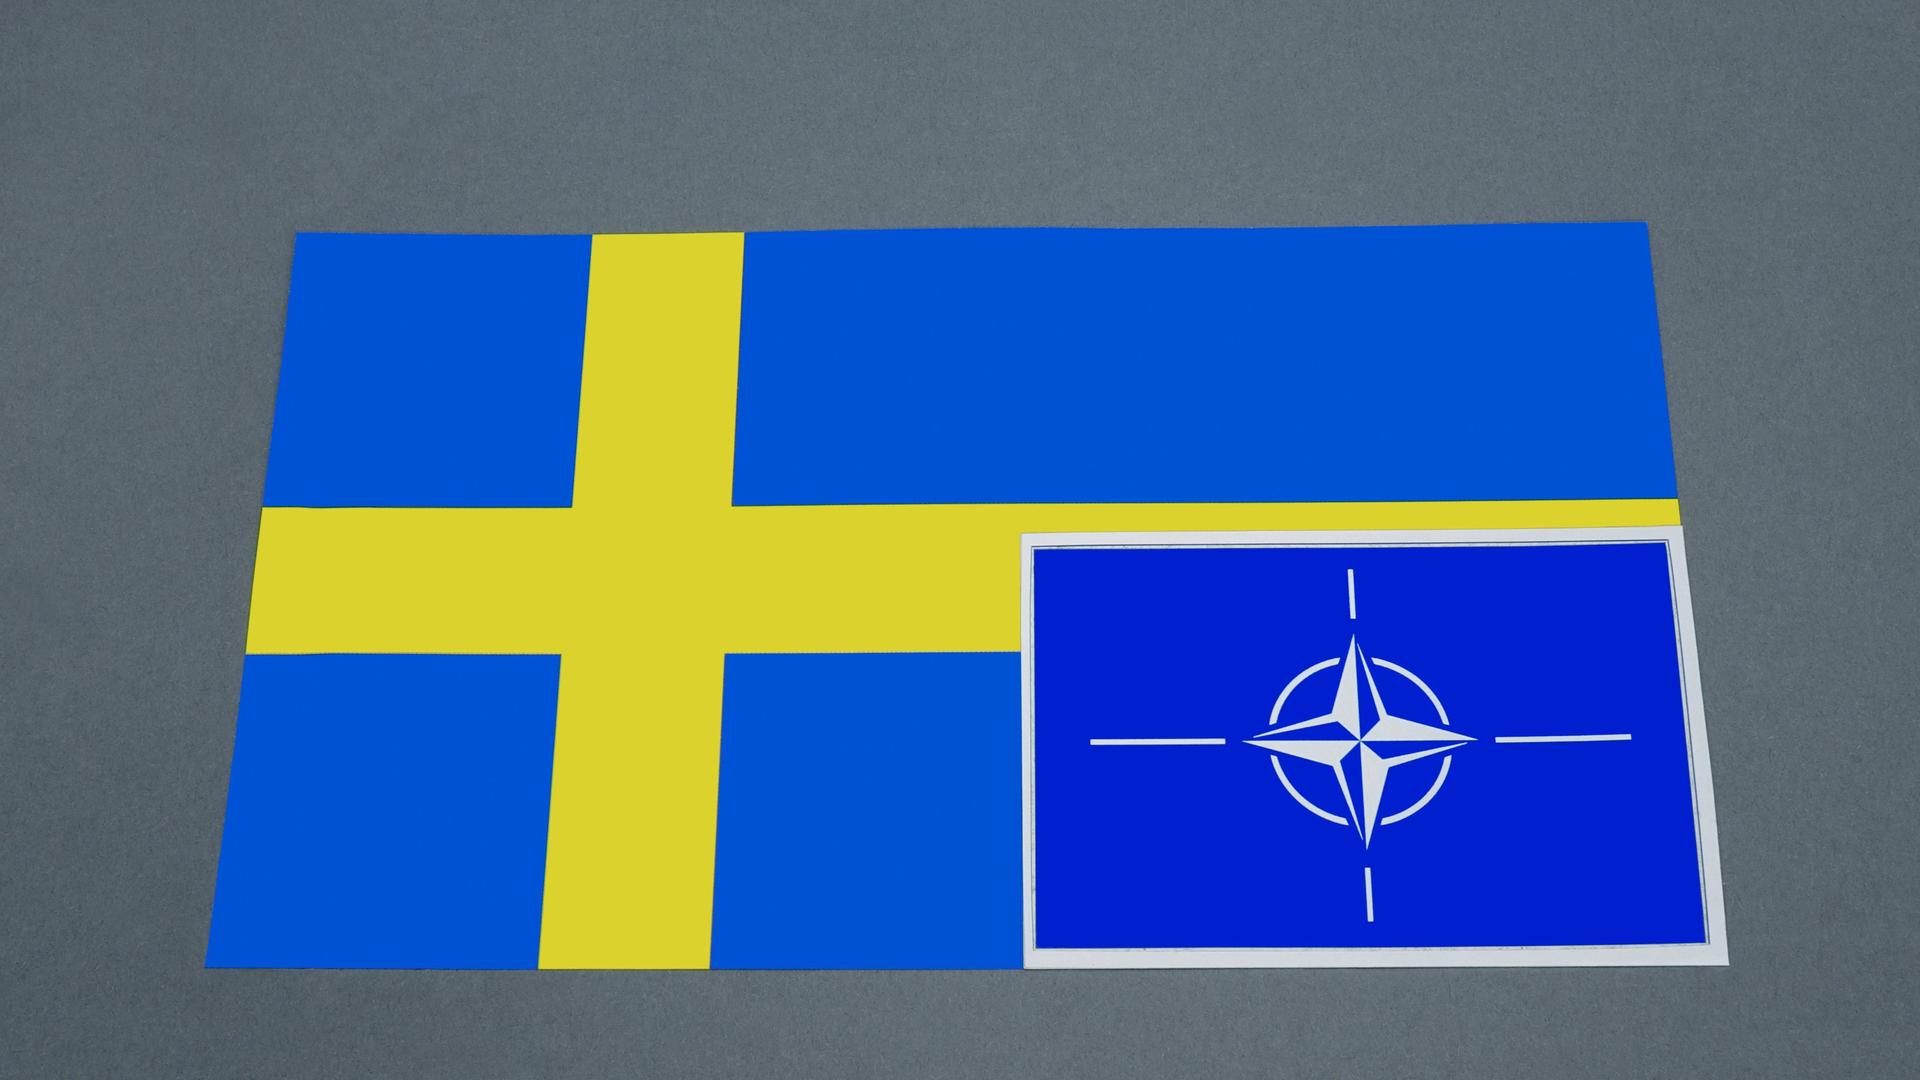 Budapest - Ungarisches Parlament will über Schwedens NATO-Beitritt abstimmen